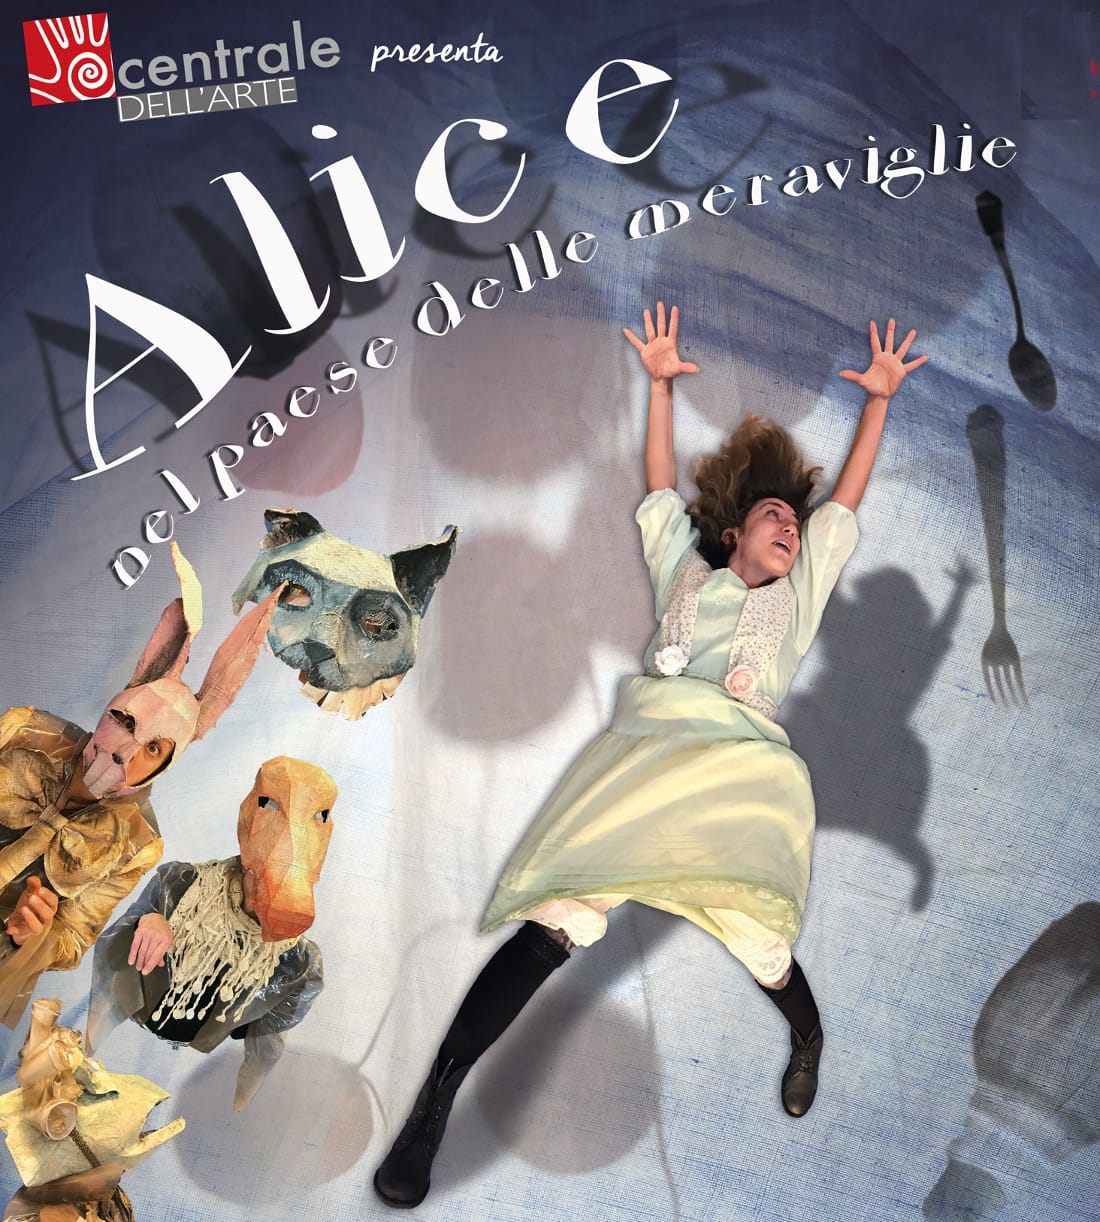 Puccini: “Alice nel paese delle meraviglie” con Centrale dell’Arte